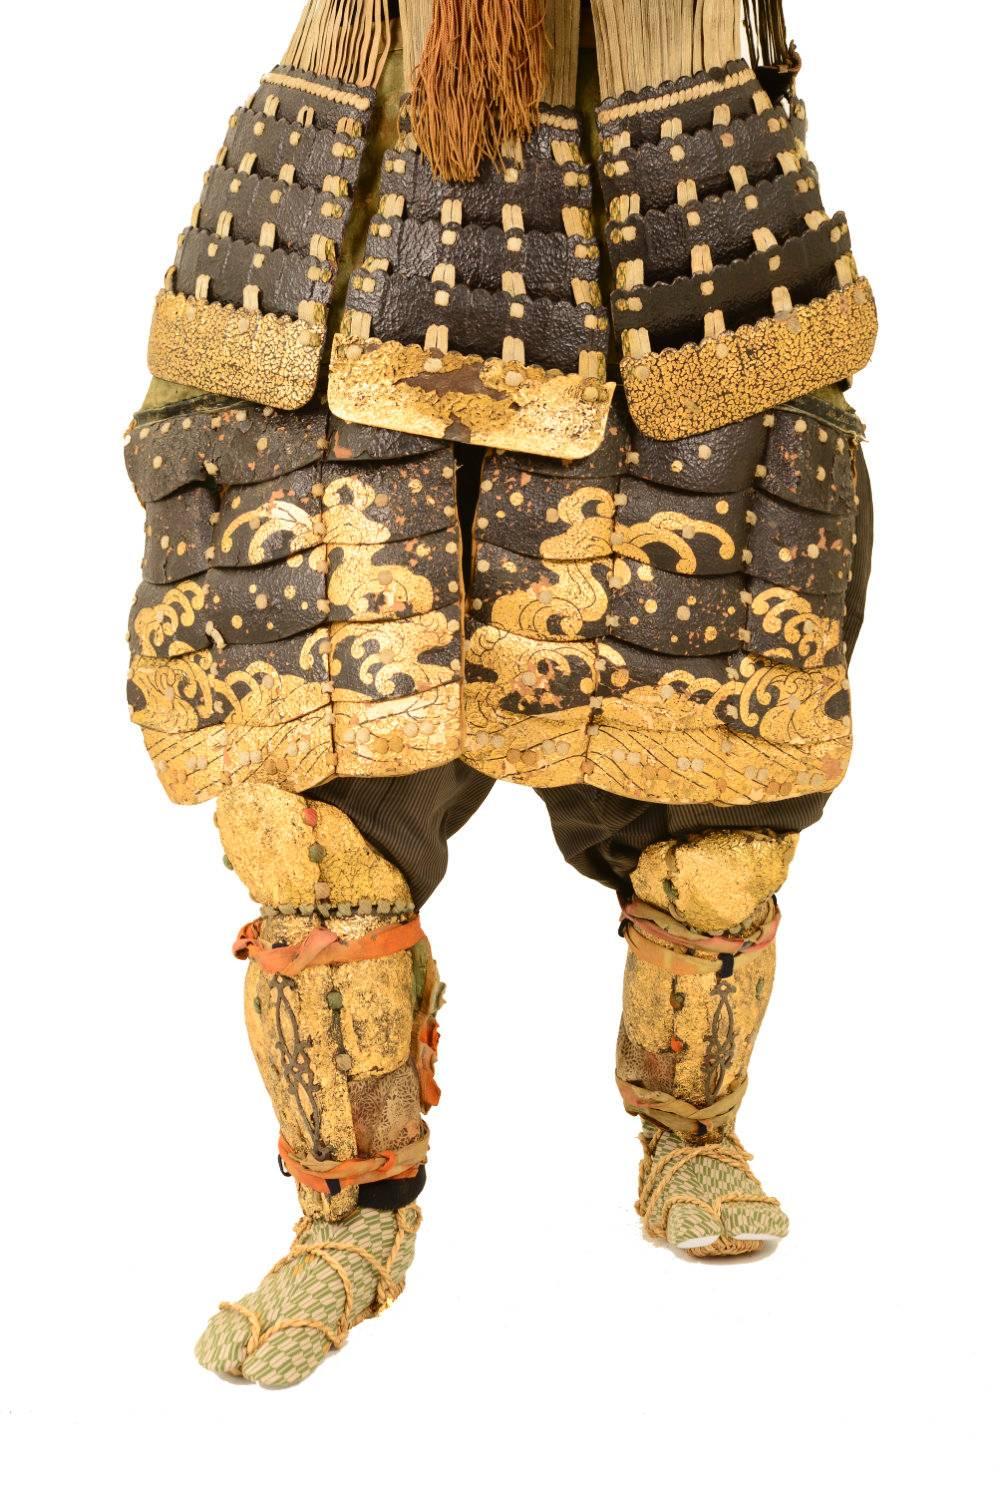 samurai armor statue